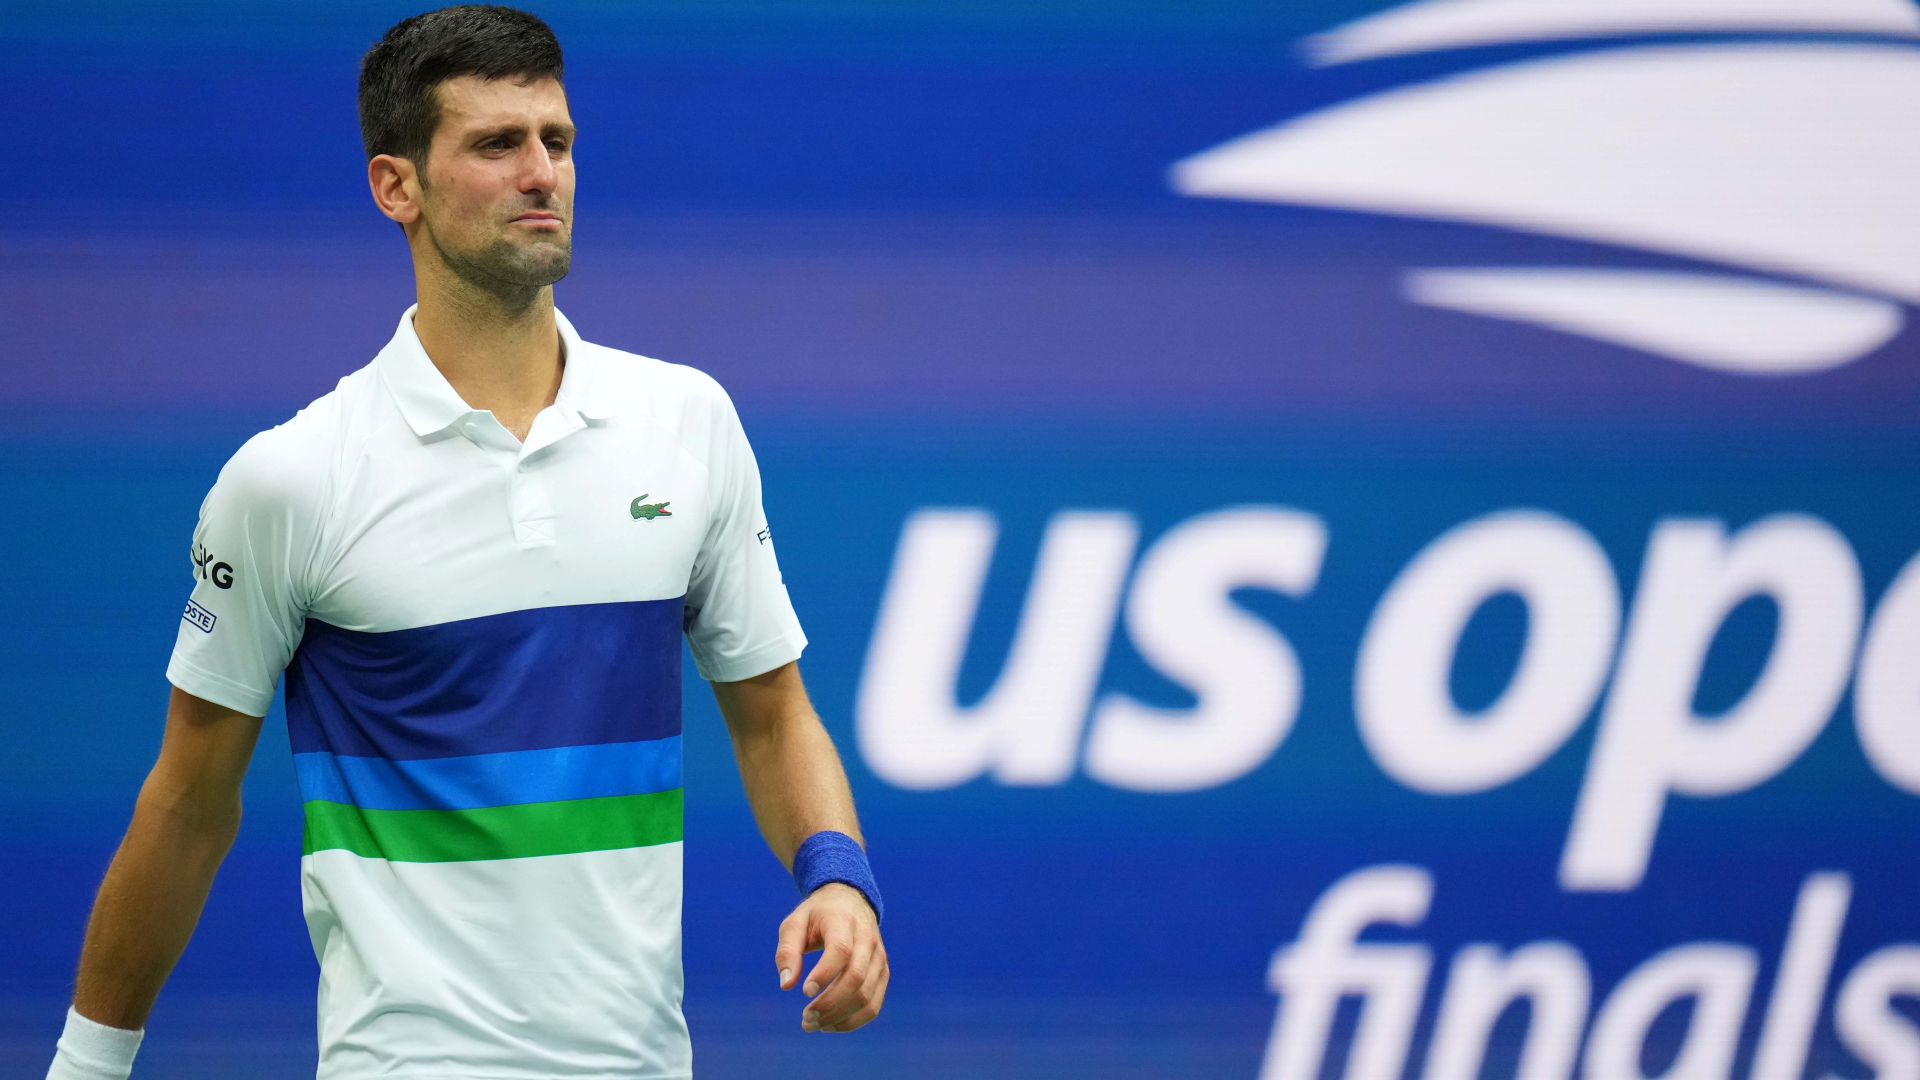 Australian Open: Unmut über Impfausnahme für Djokovic